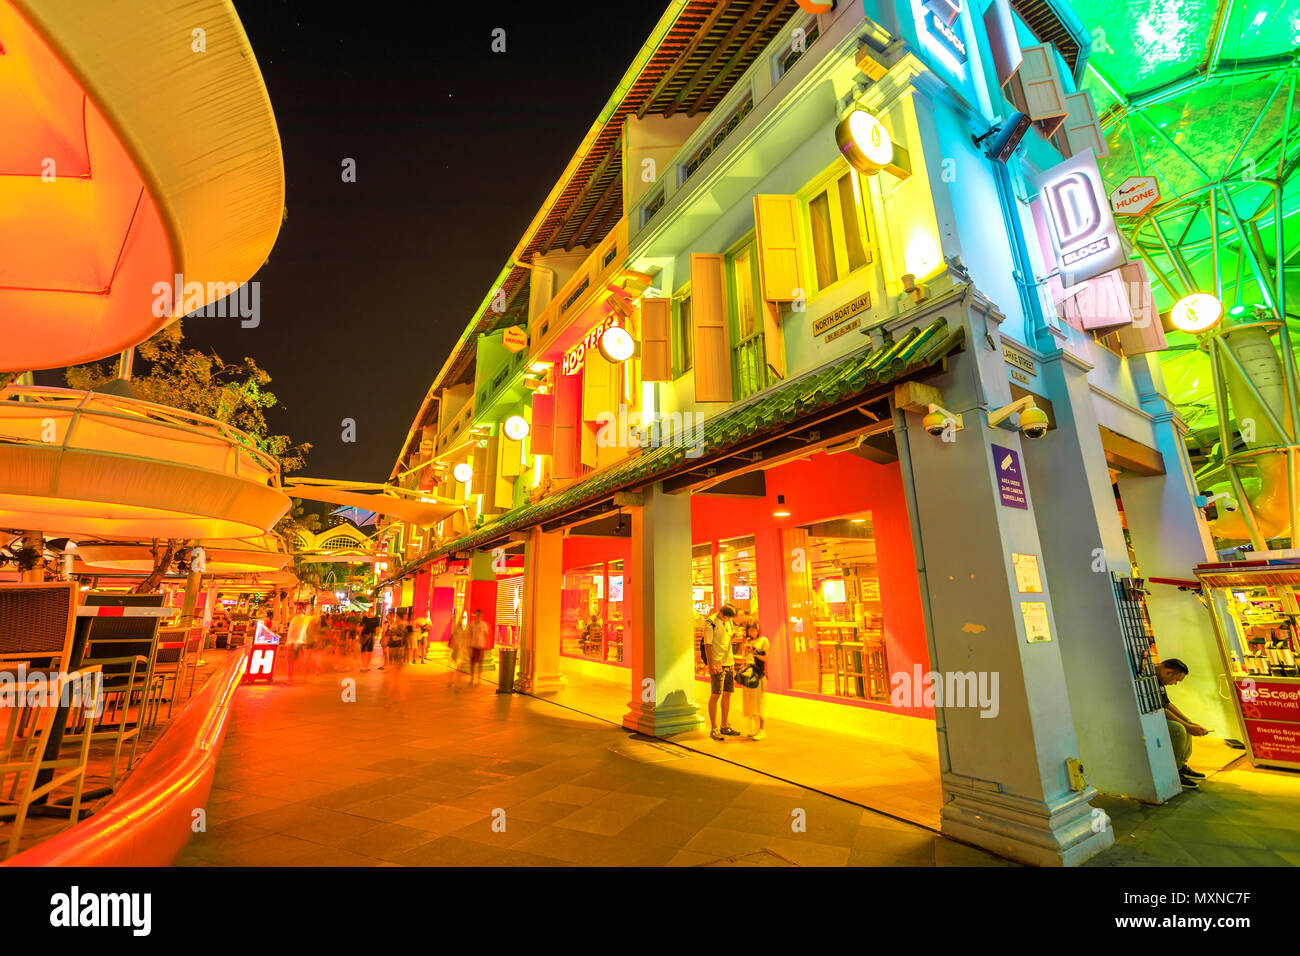 Singapur - 5. Mai 2018: Street View von Clarke Quay mit Lichtern und Clubs im historischen Riverside Quay, berühmt für Clubs und Nachtleben. Nachtaufnahme der bunten Gebäude. Stockfoto